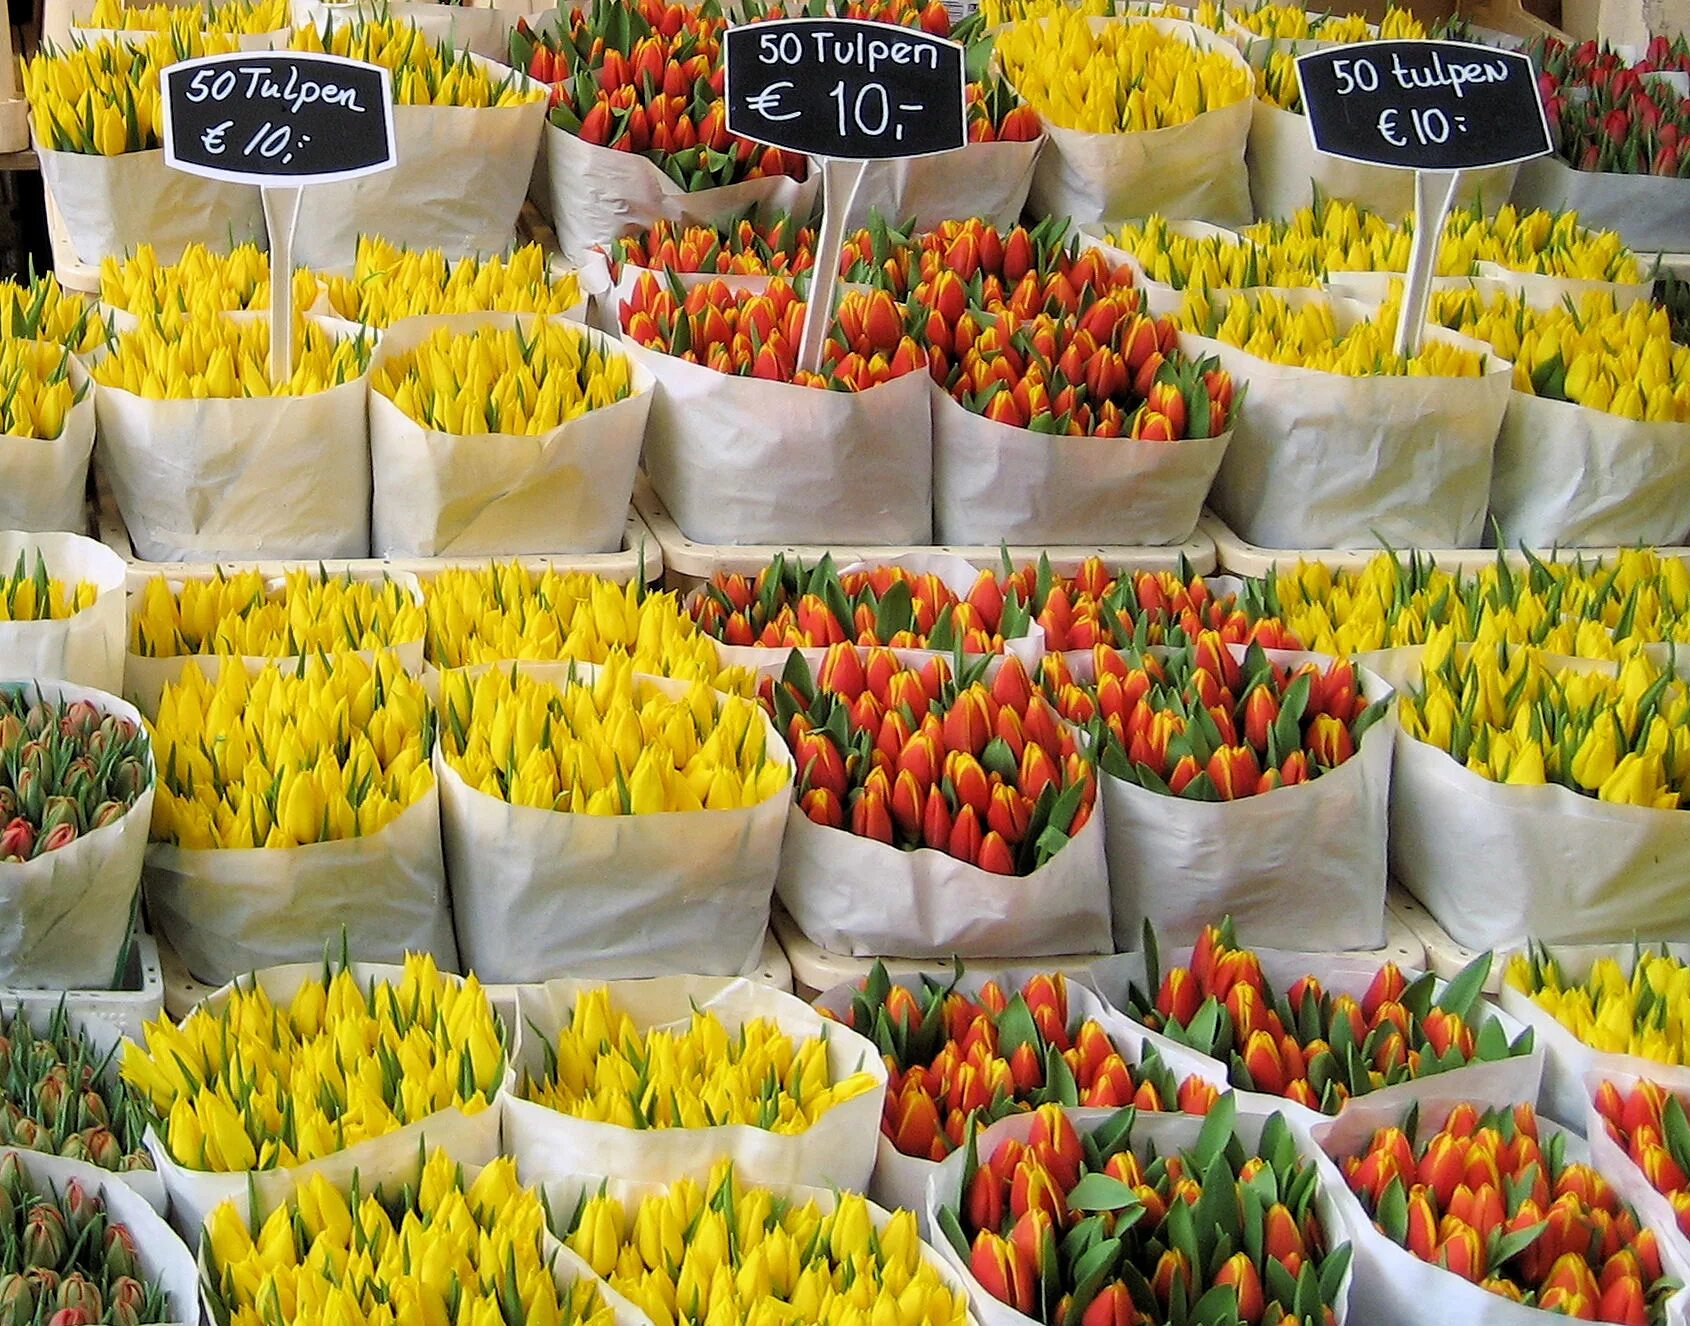 Новый цветочный рынок. Рынок тюльпанов в Амстердаме. Bloemenmarkt в Амстердаме. Цветочный рынок Амстердам Нидерланды. Flower Market in Amsterdam (Bloemenmarkt).